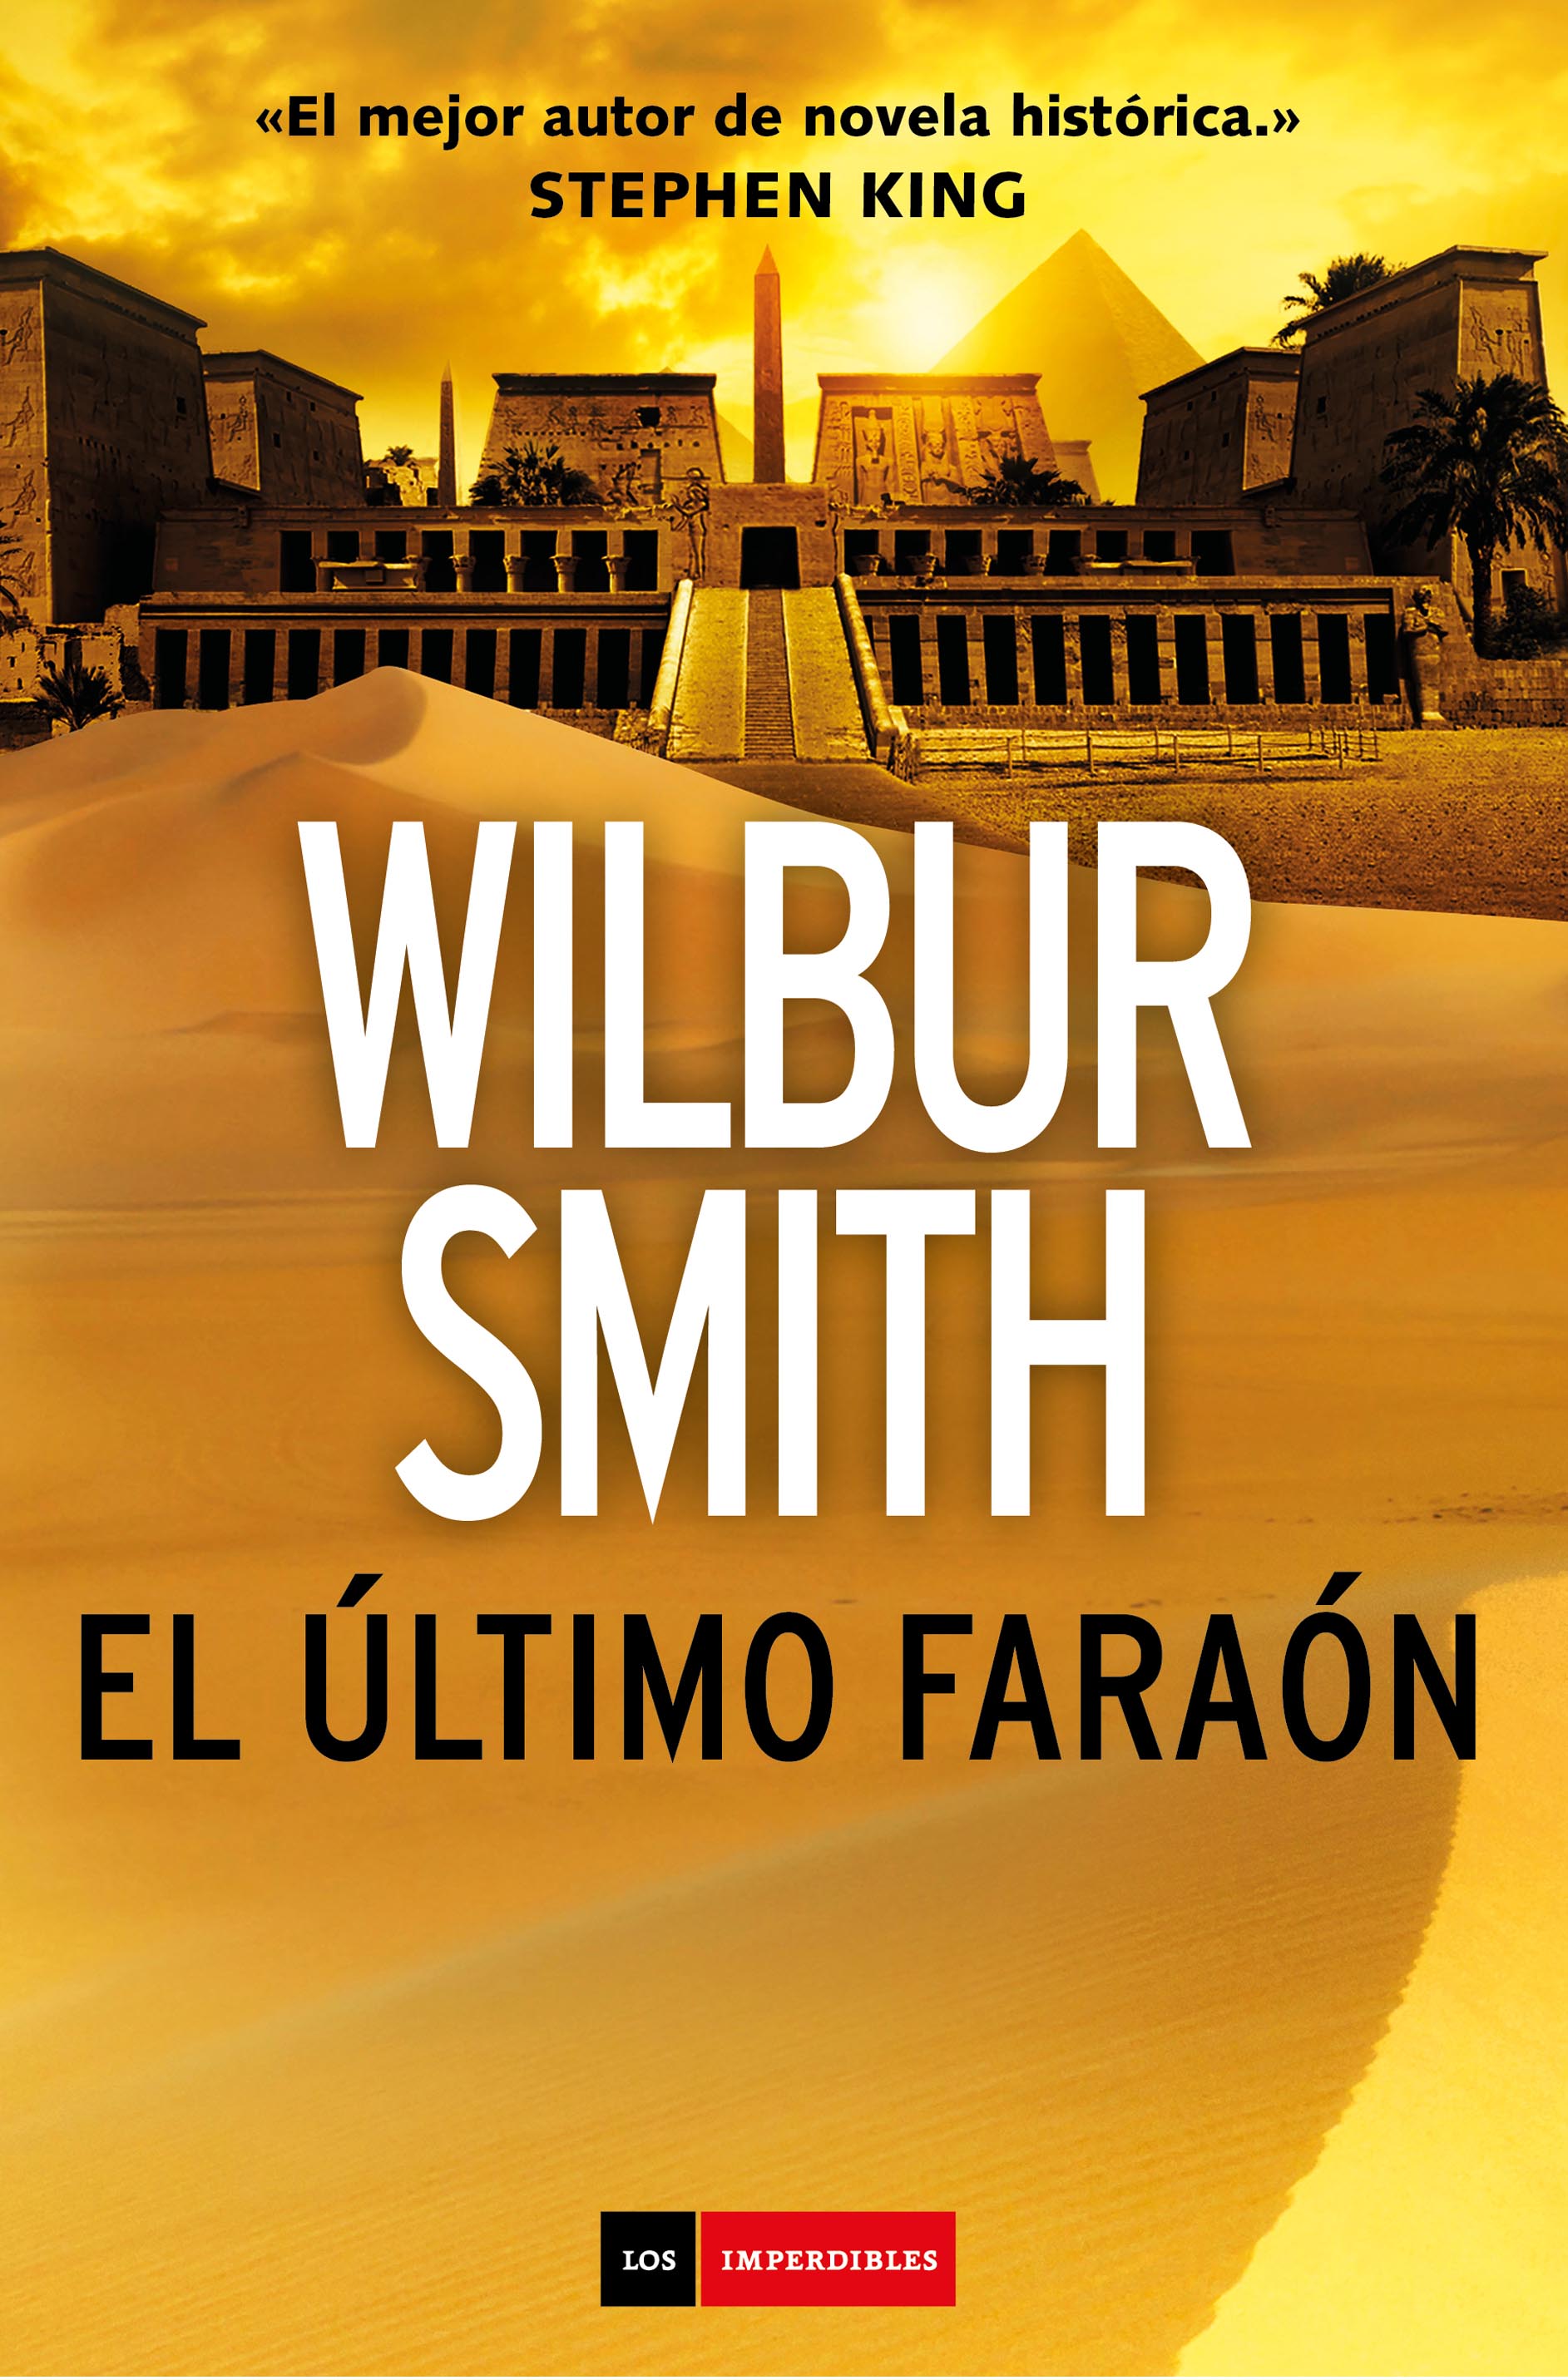 El último faraón, de Wilbur Smith